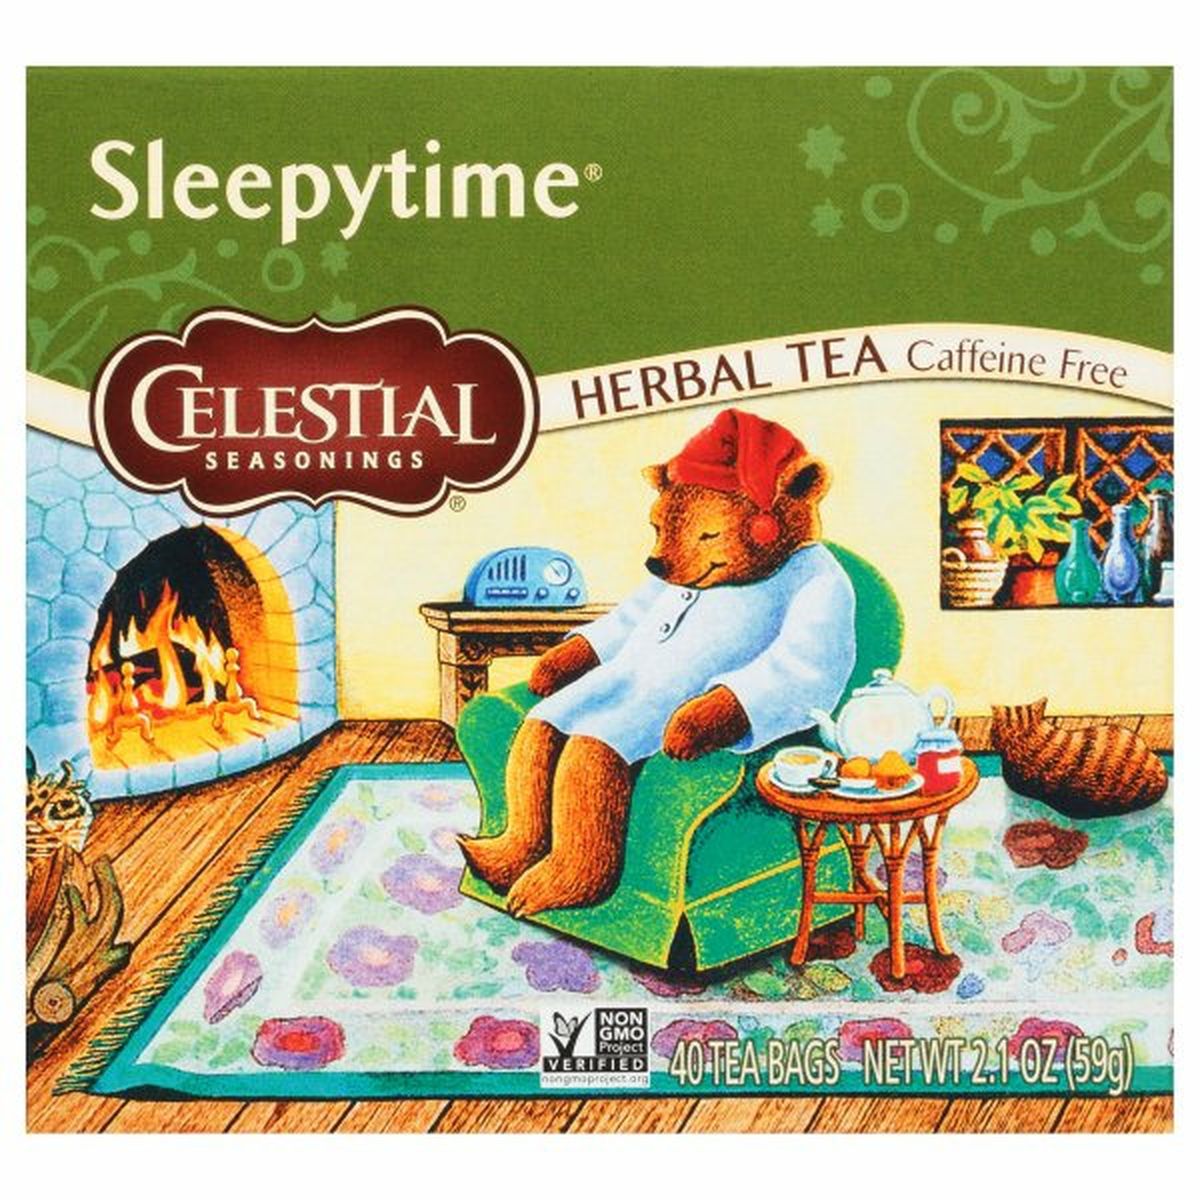 Calories in Celestial Seasonings Sleepytime Herbal Tea, Caffeine Free